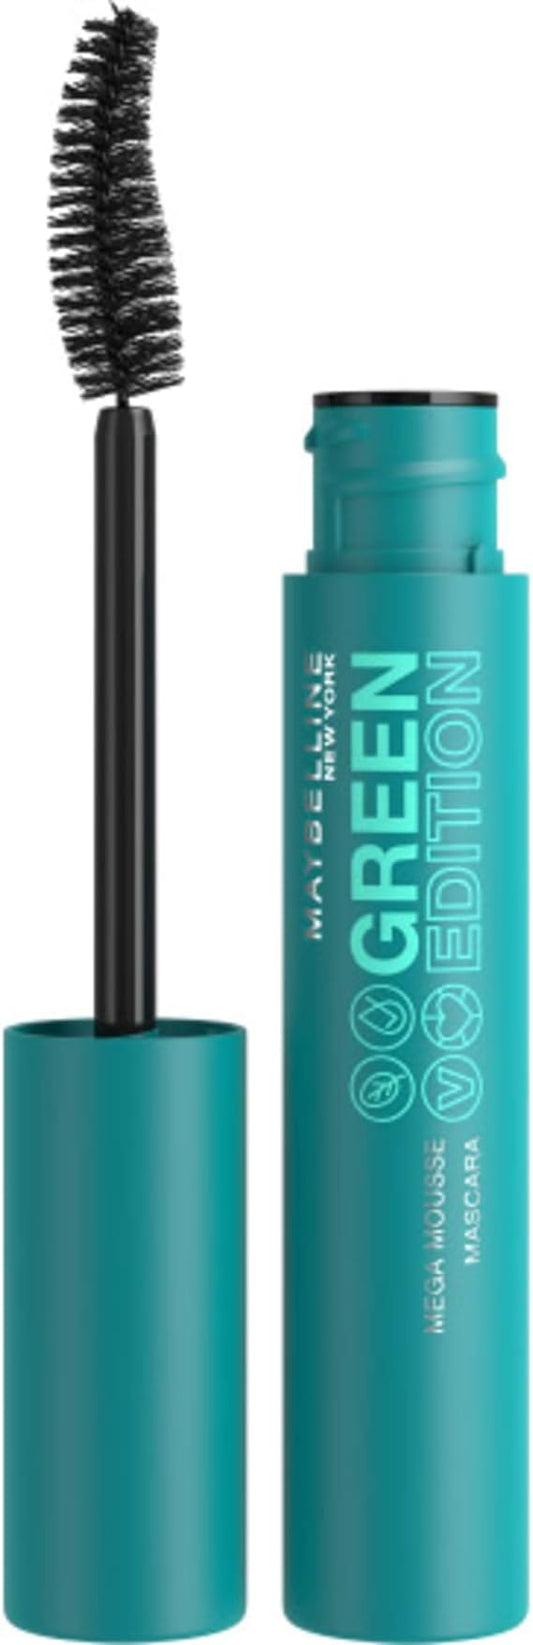 Maybelline - Green Edition Mega Mousse Mascara Brownish Black Color